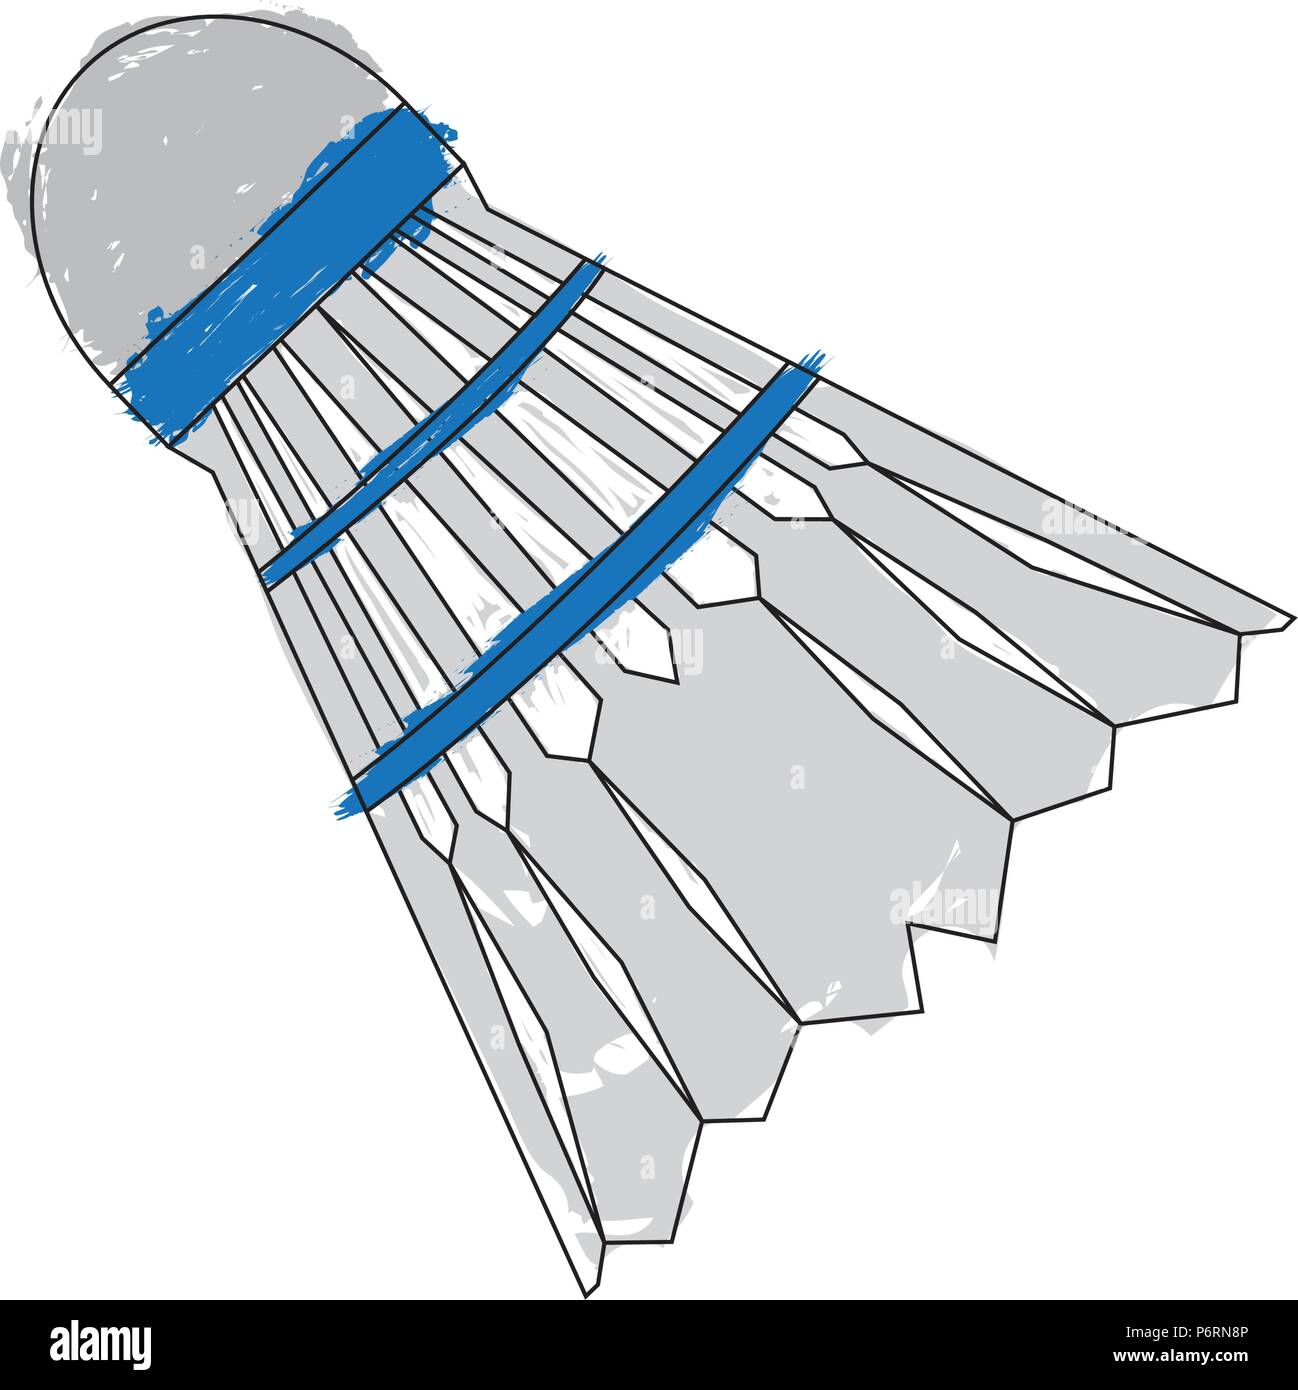 Croquis d'un volant de badminton Illustration de Vecteur